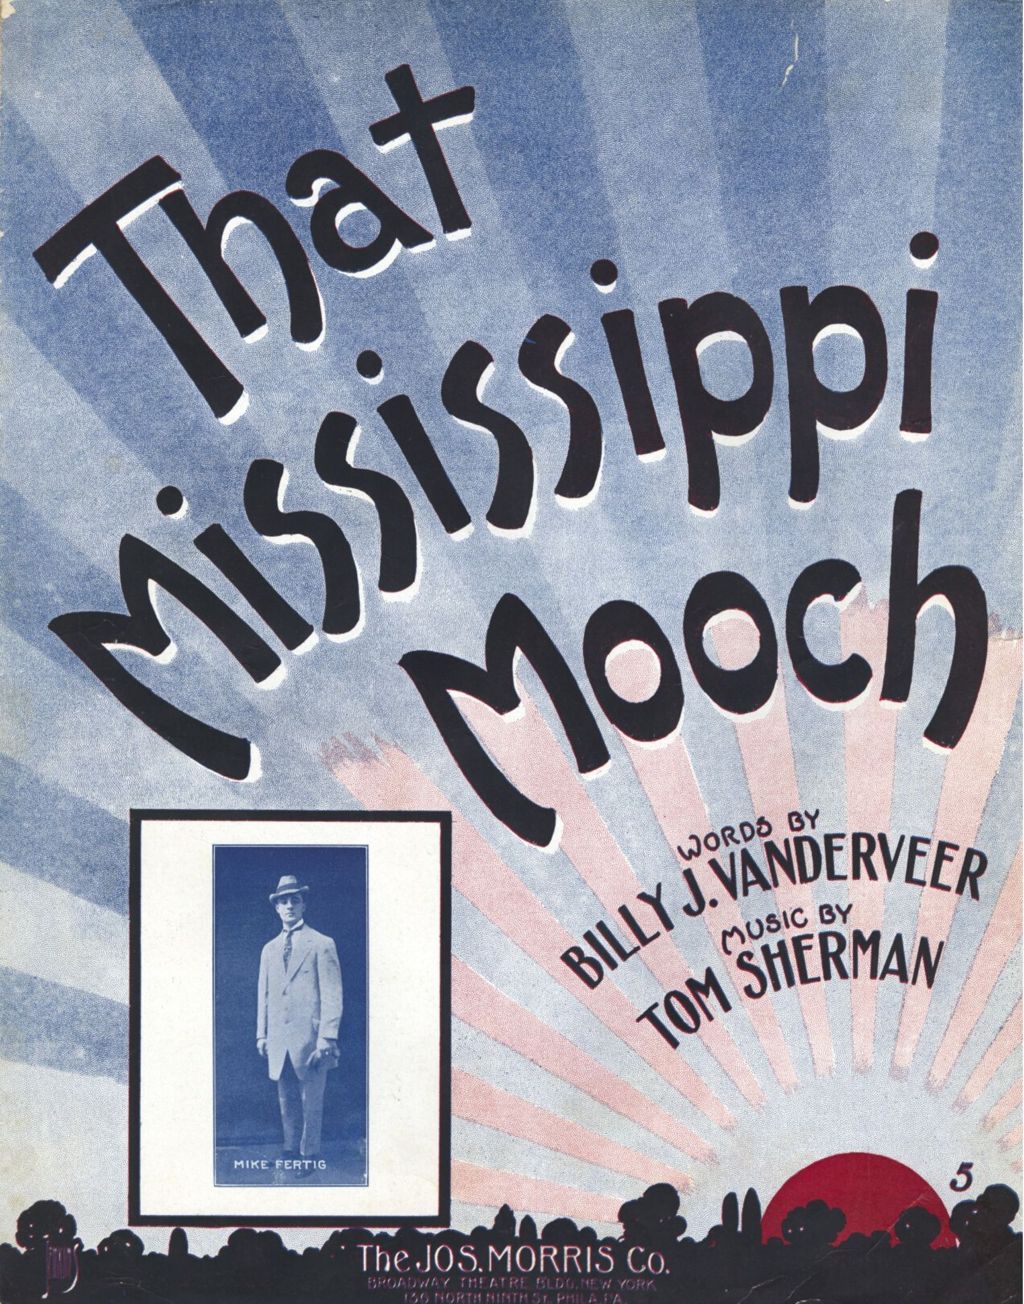 That Mississippi Mooch